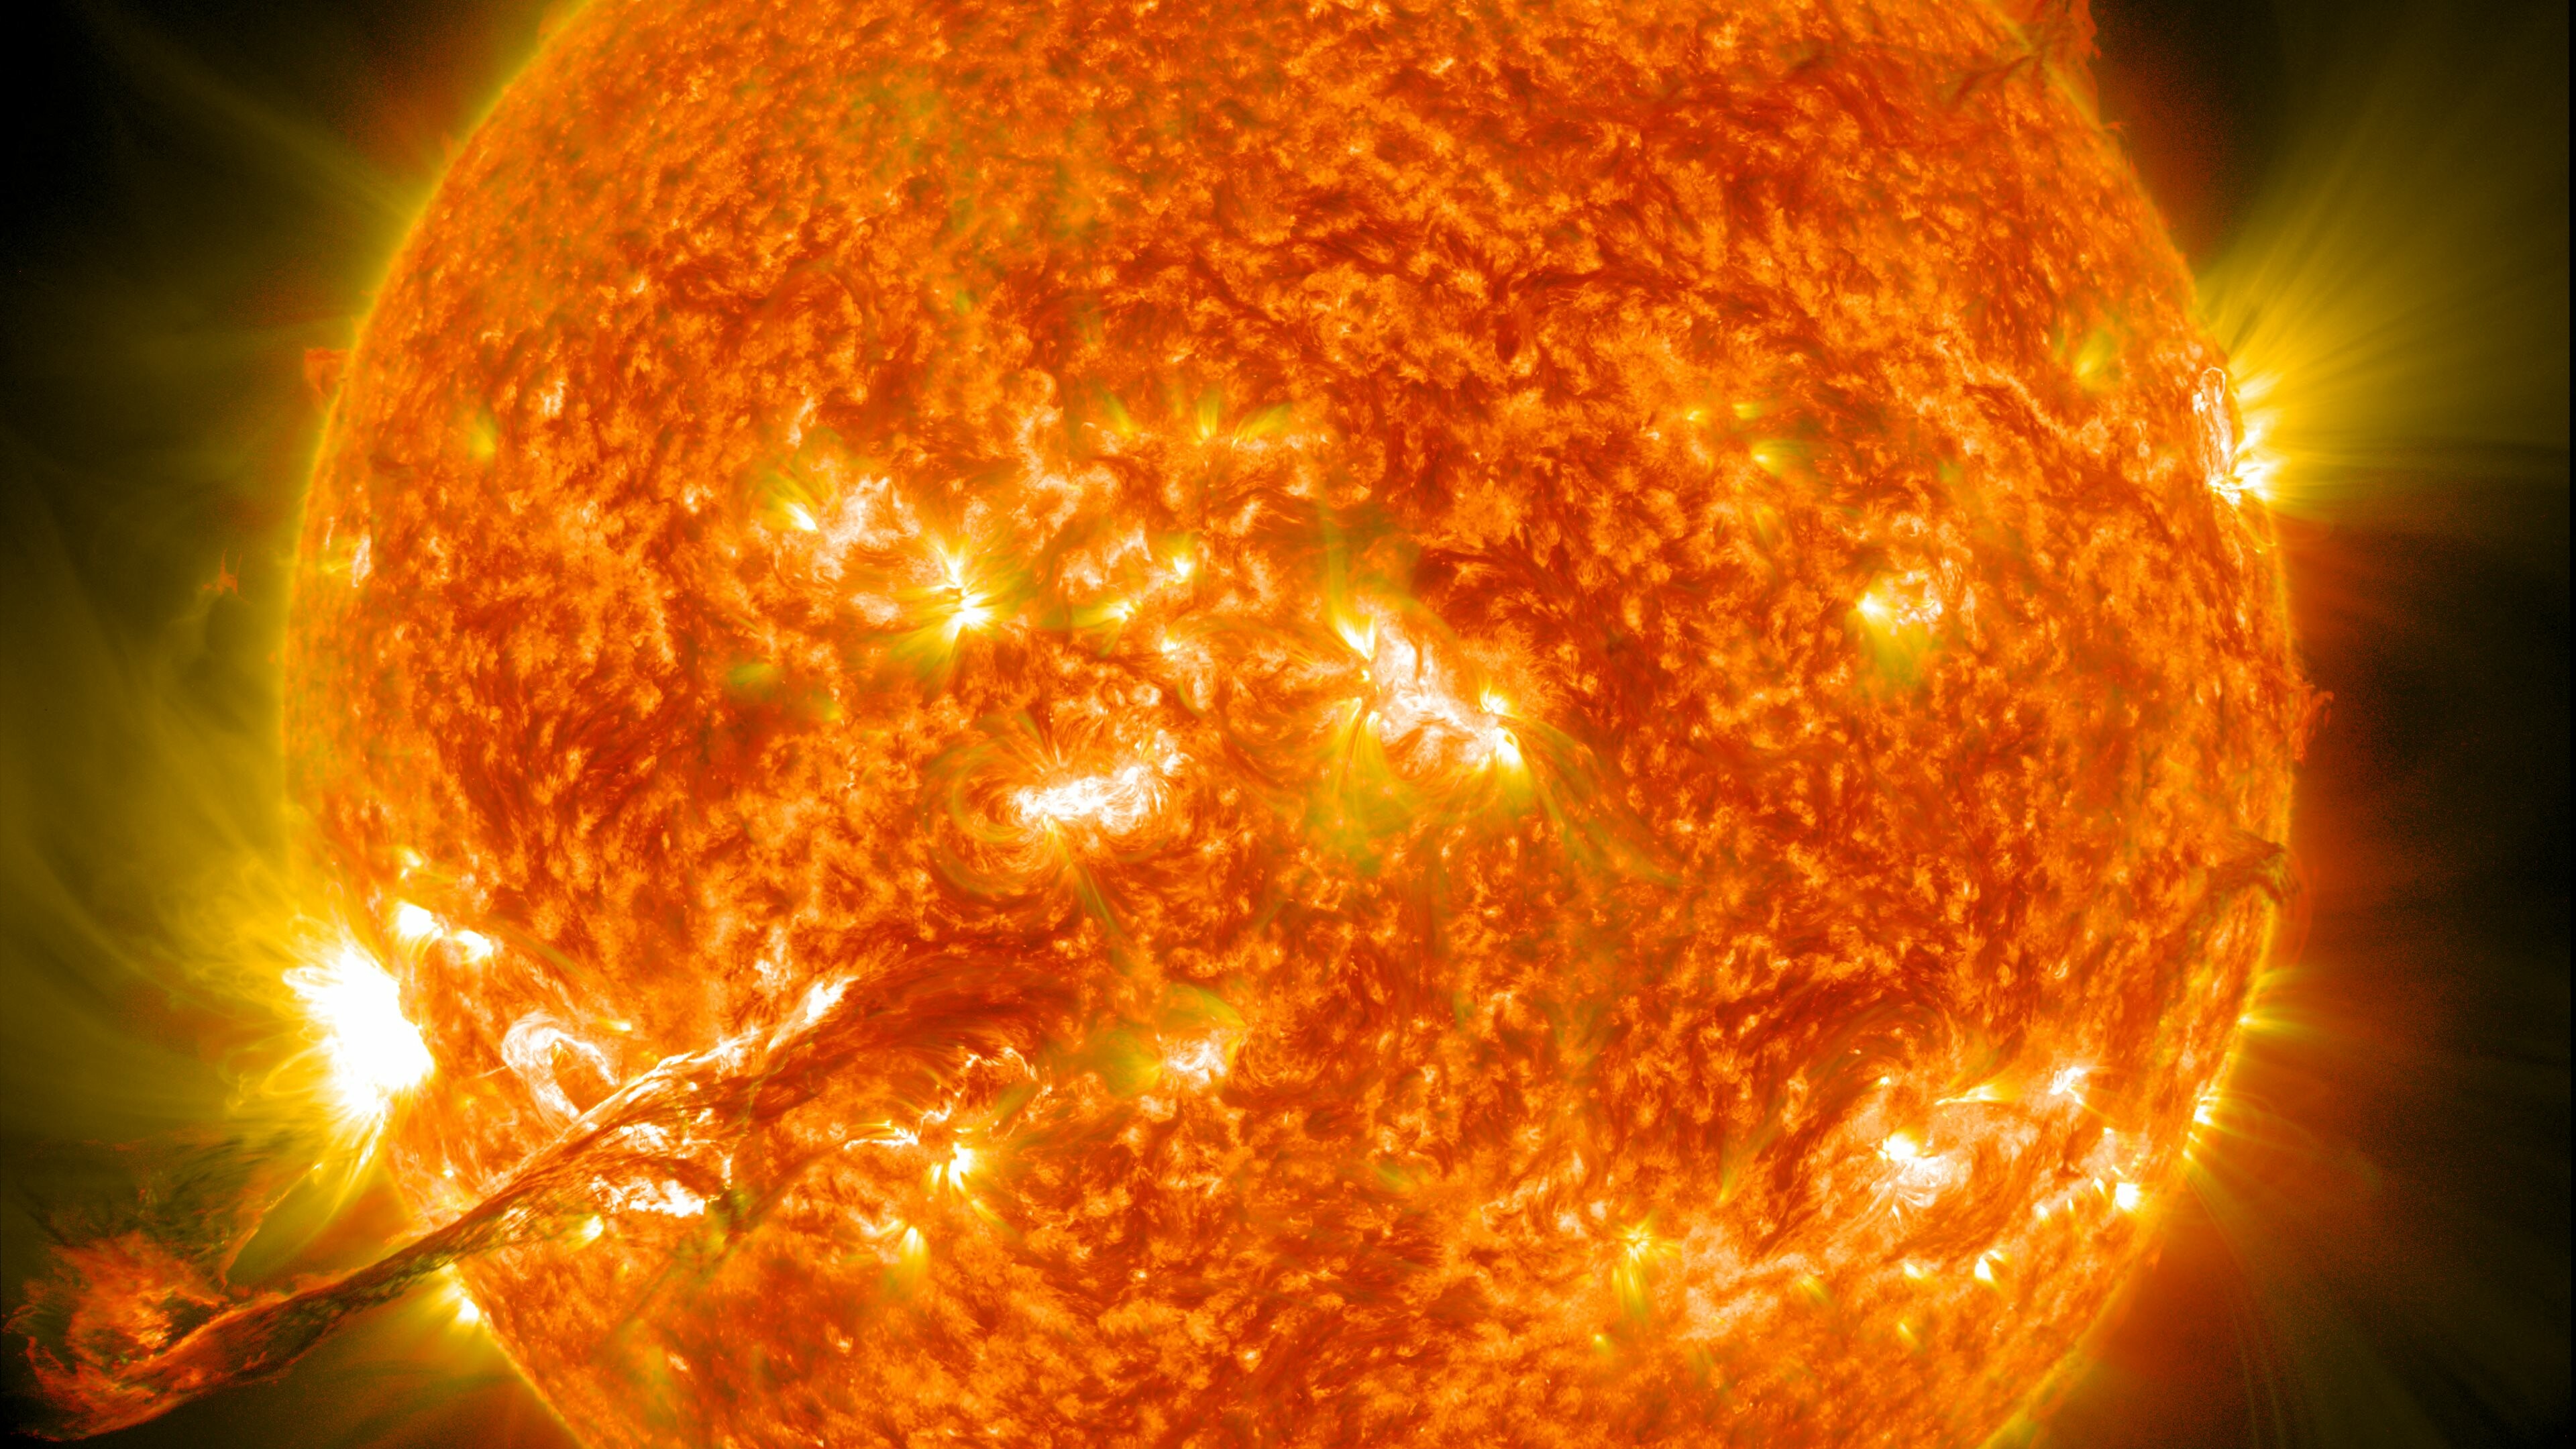 Awe-inspiring sun, NASA's view, Captivating imagery, Celestial wonder, 3840x2160 4K Desktop